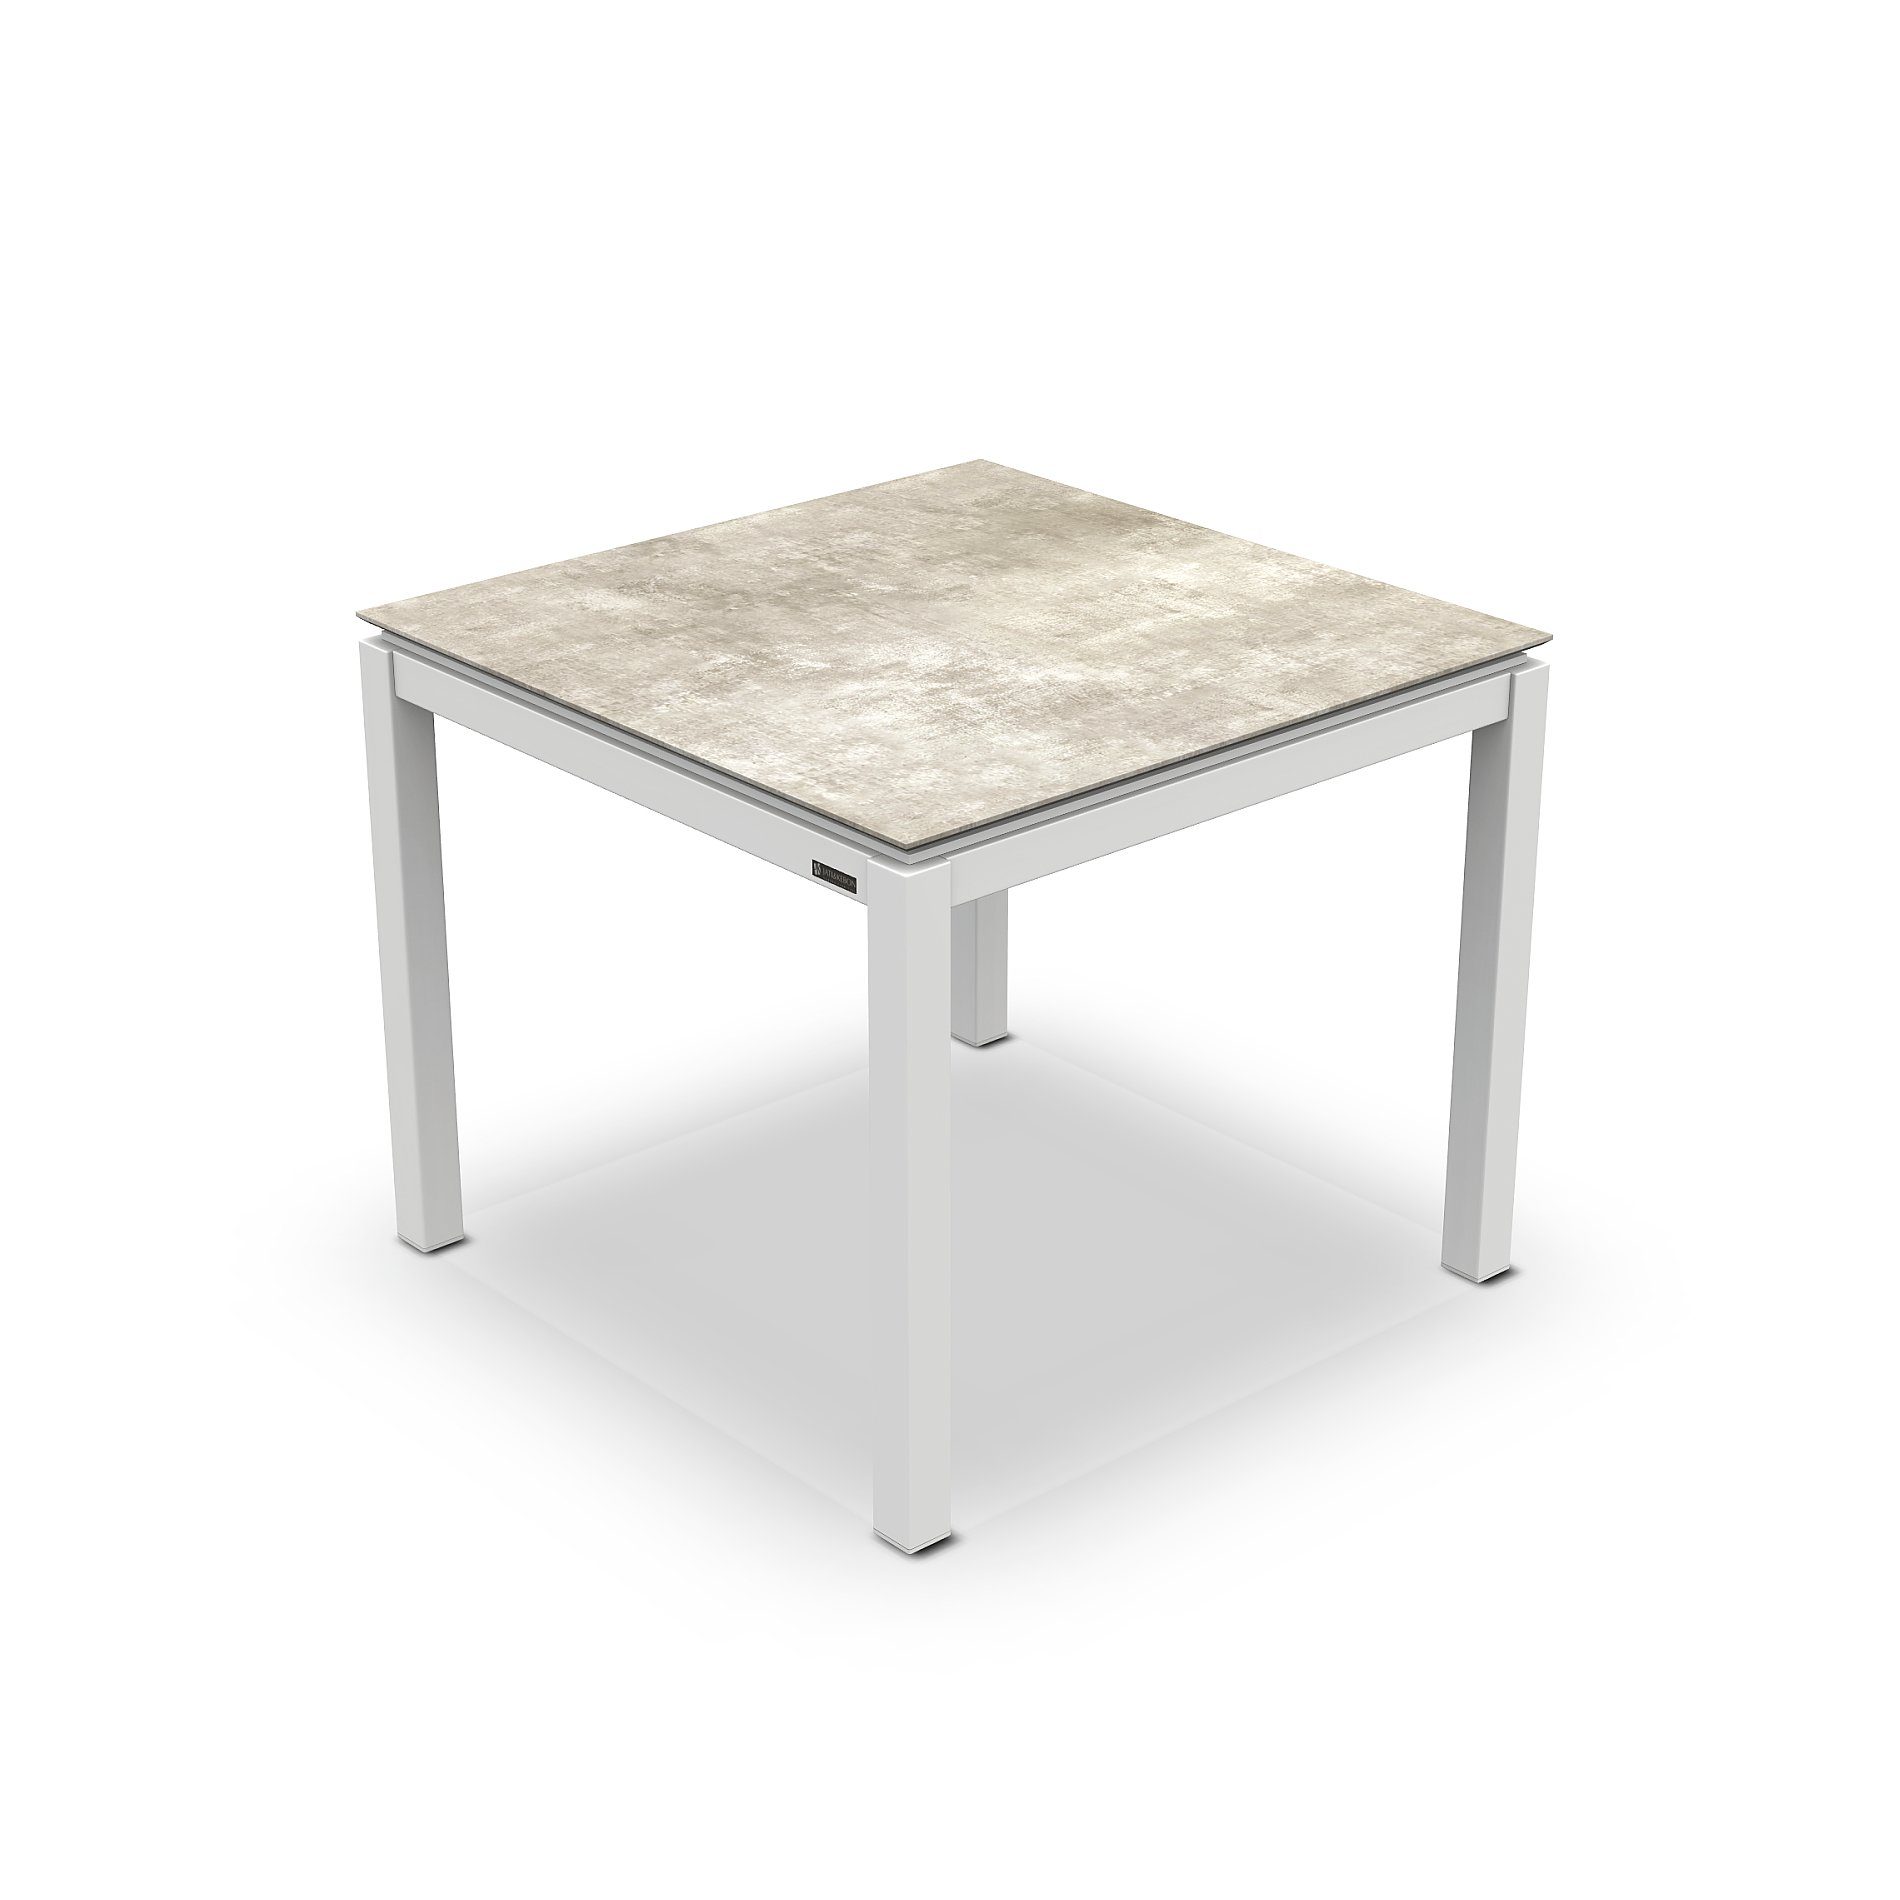 Jati&Kebon Gartentisch “Lugo“, Gestell Aluminium weiß, Tischplatte HPL Granit hellgrau, 80x80 cm